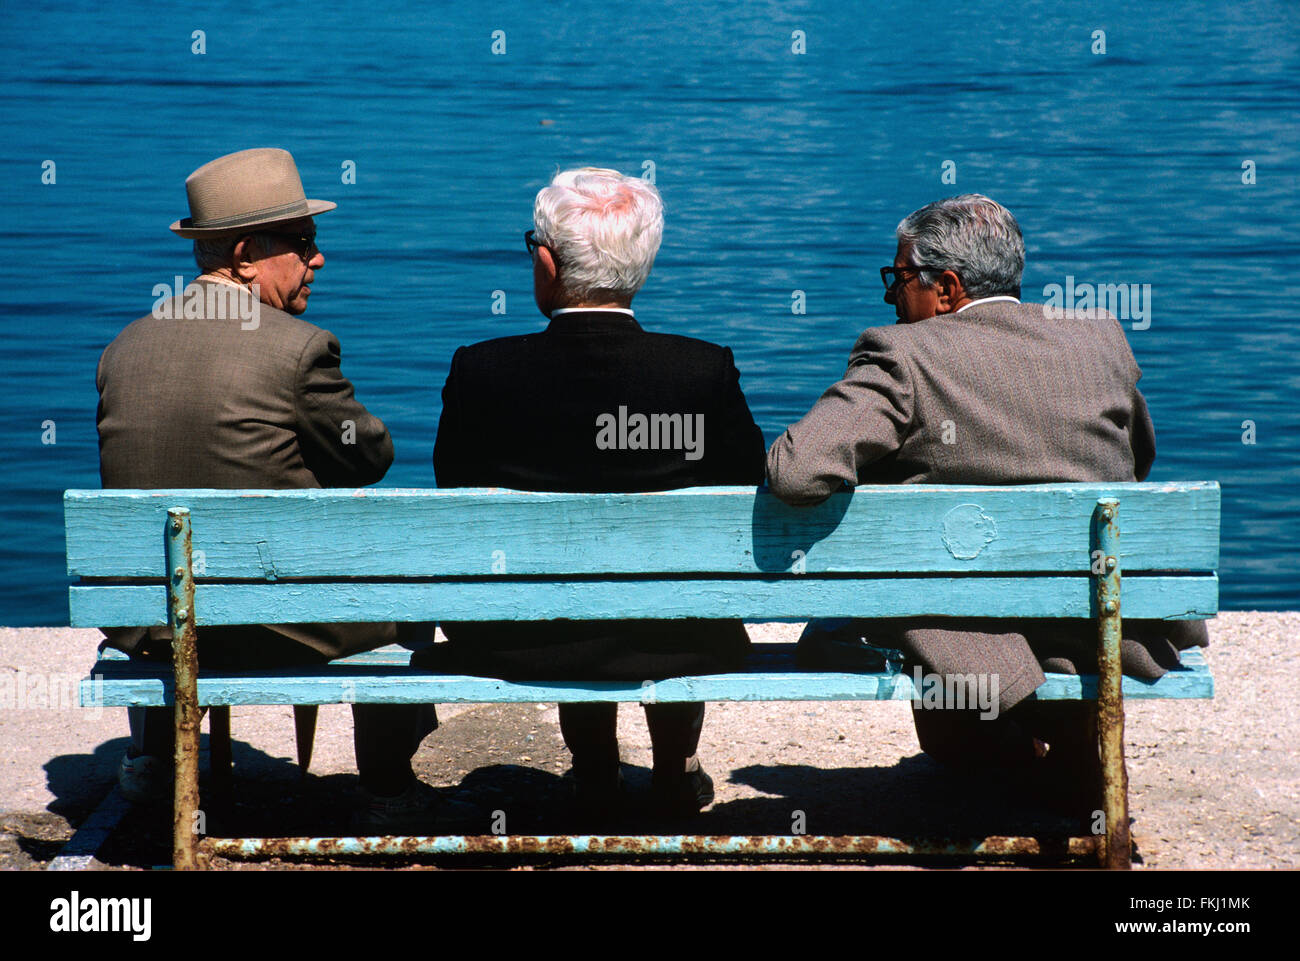 Drei ältere türkische Männer oder Türken im Chat auf blau Park Bench, Kusasasi, Türkei Stockfoto